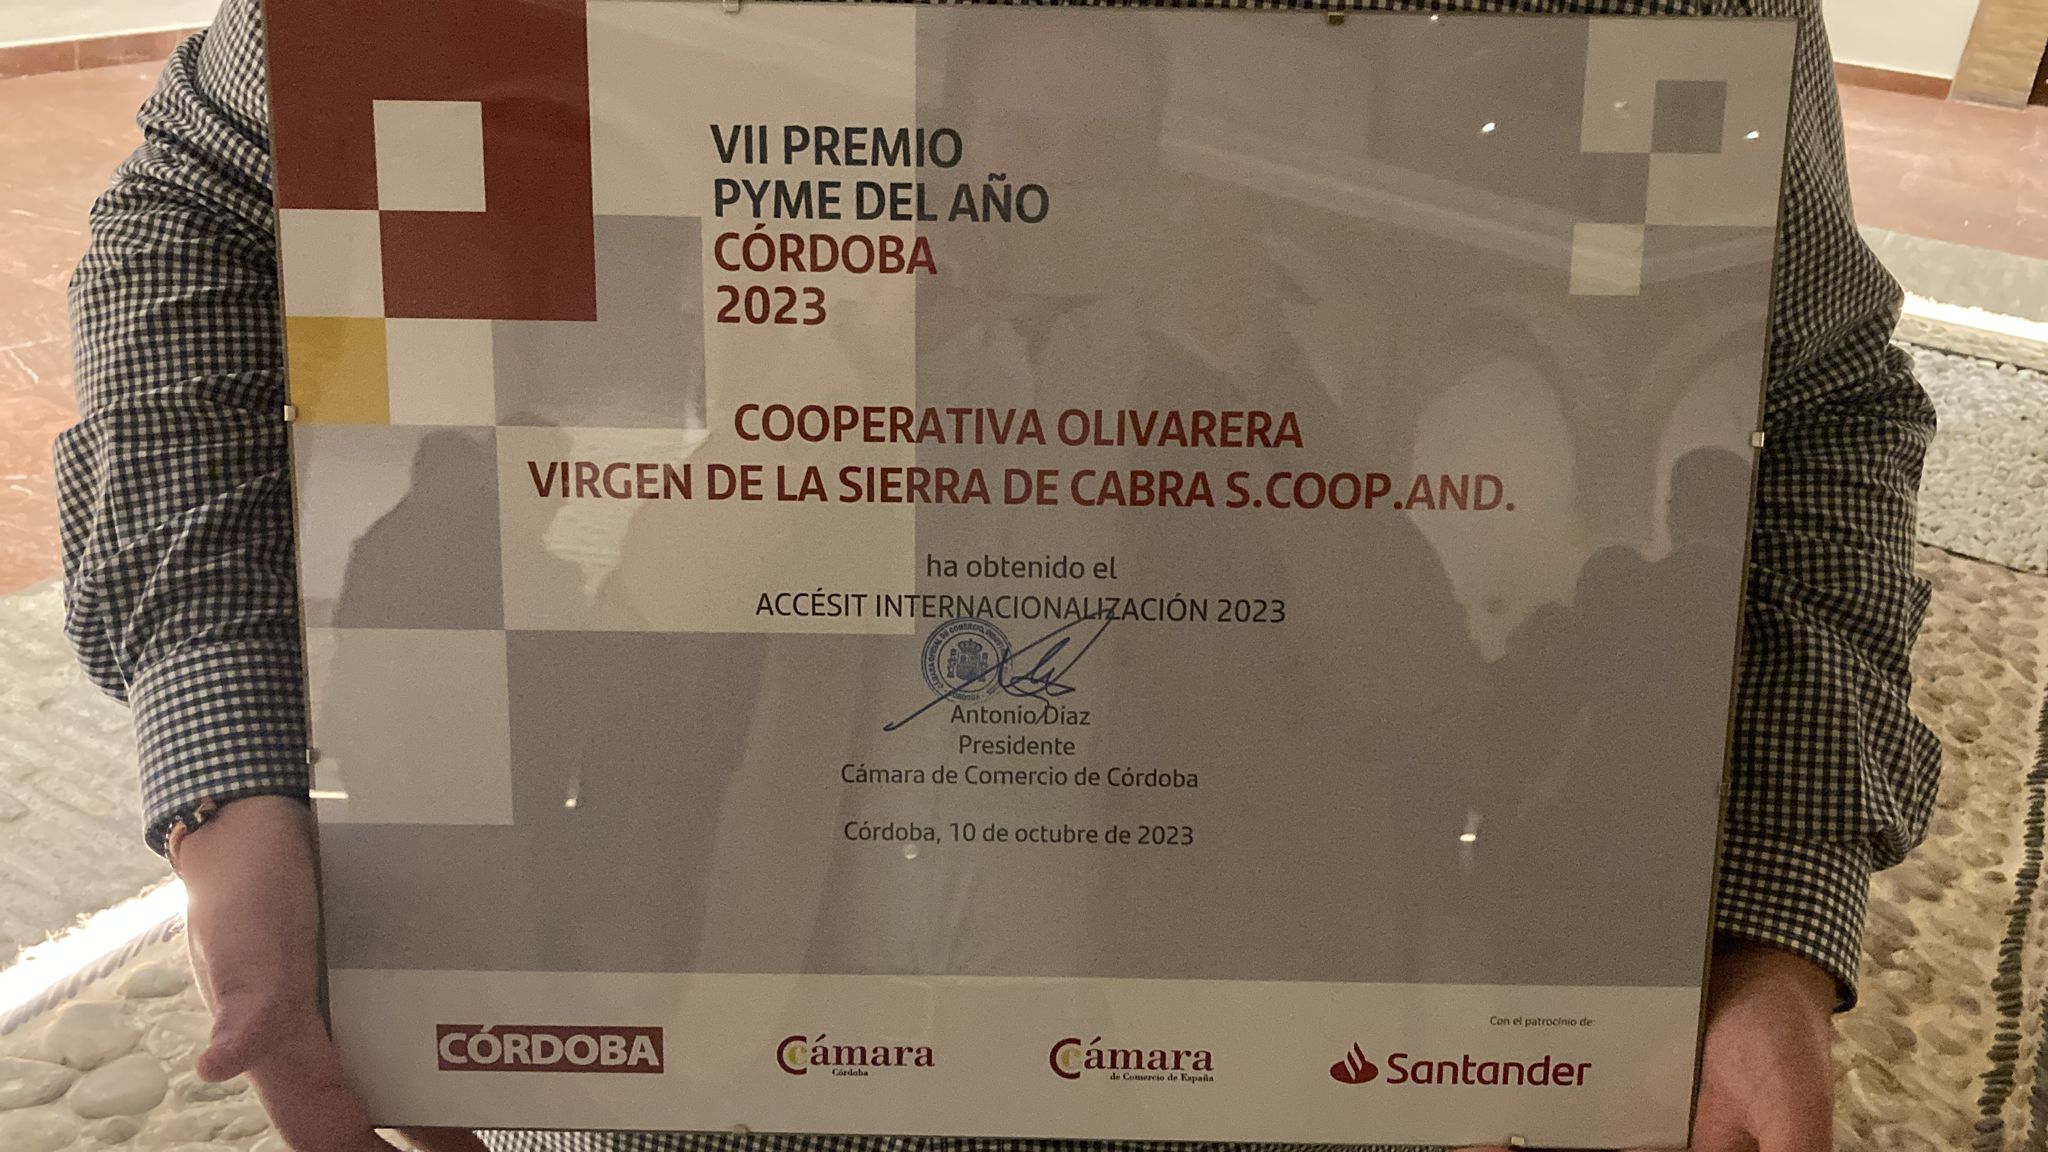 La Cooperativa Olivarera Virgen de la Sierra de Cabra recibe un accésit de los Premios Pyme del Año de Córdoba - 2